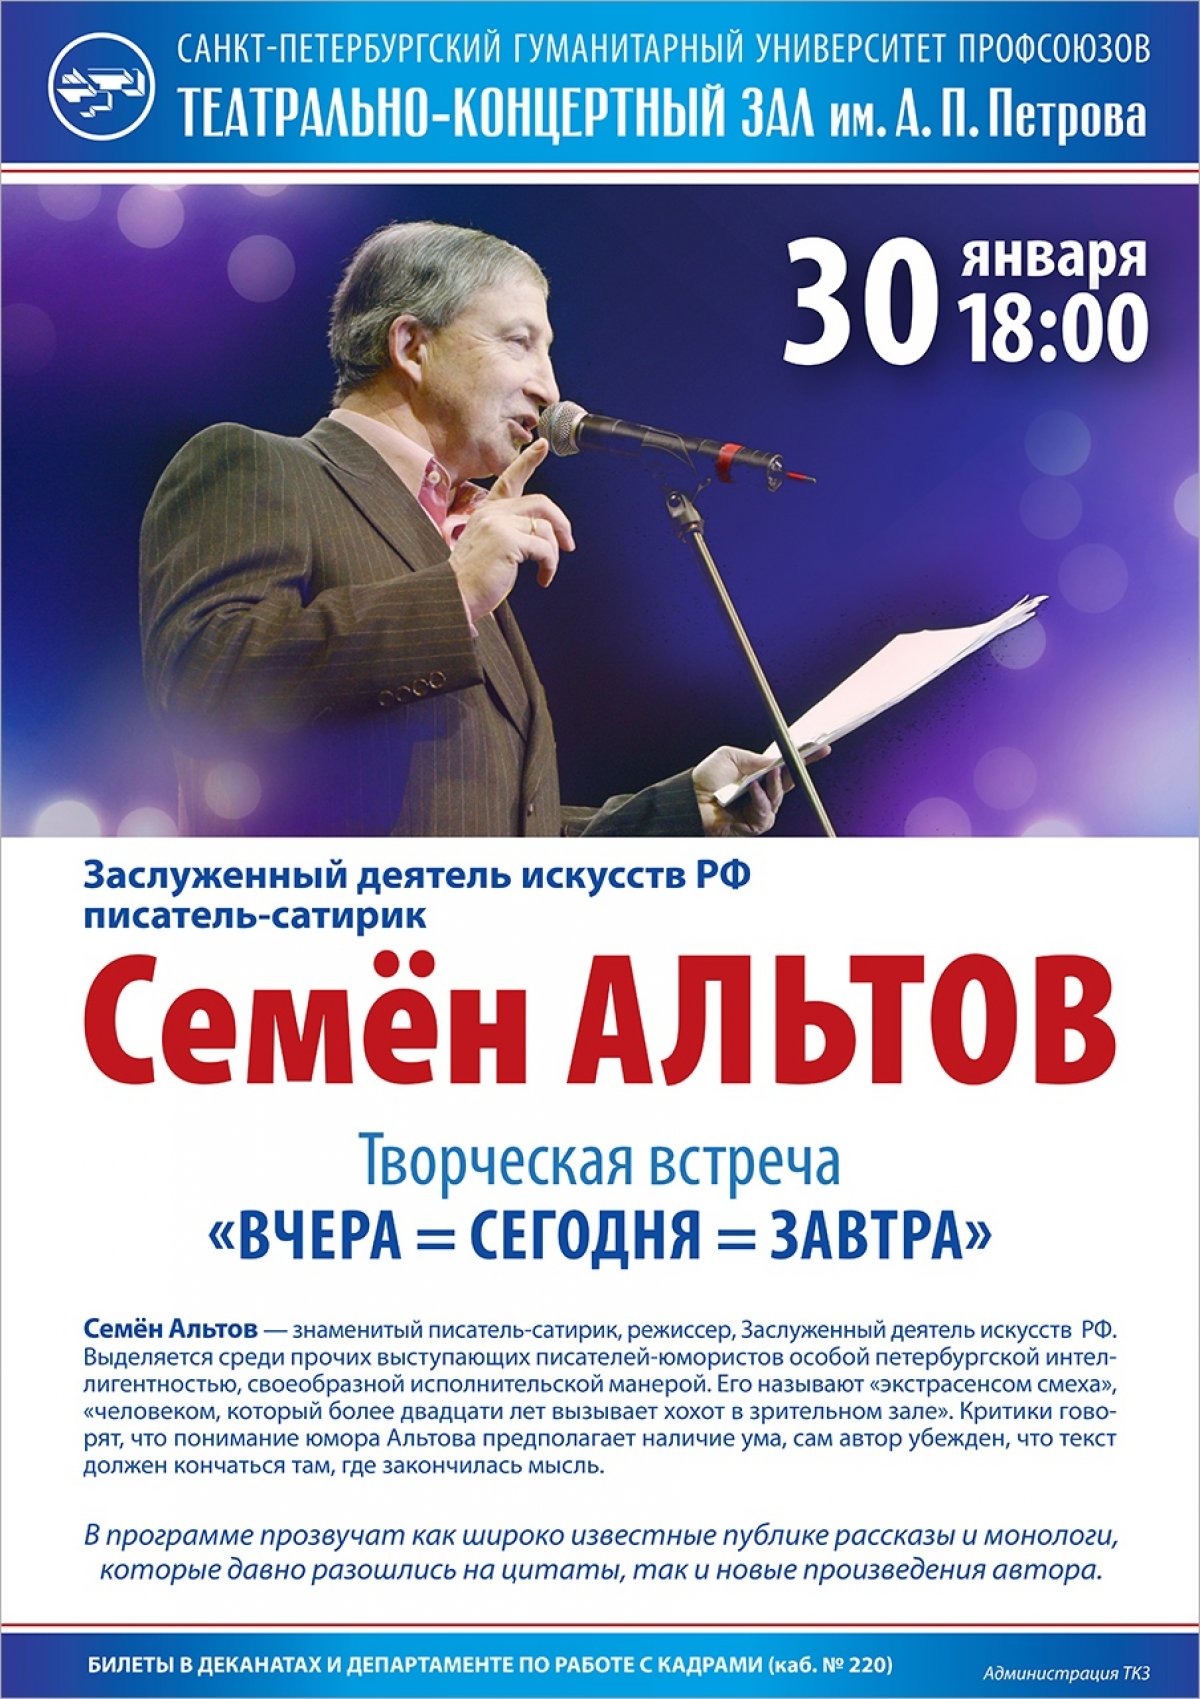 30 января в 18.00 в Театрально-концертном зале им. А.П. Петрова состоится творческий вечер писателя-сатирика Семена Альтова